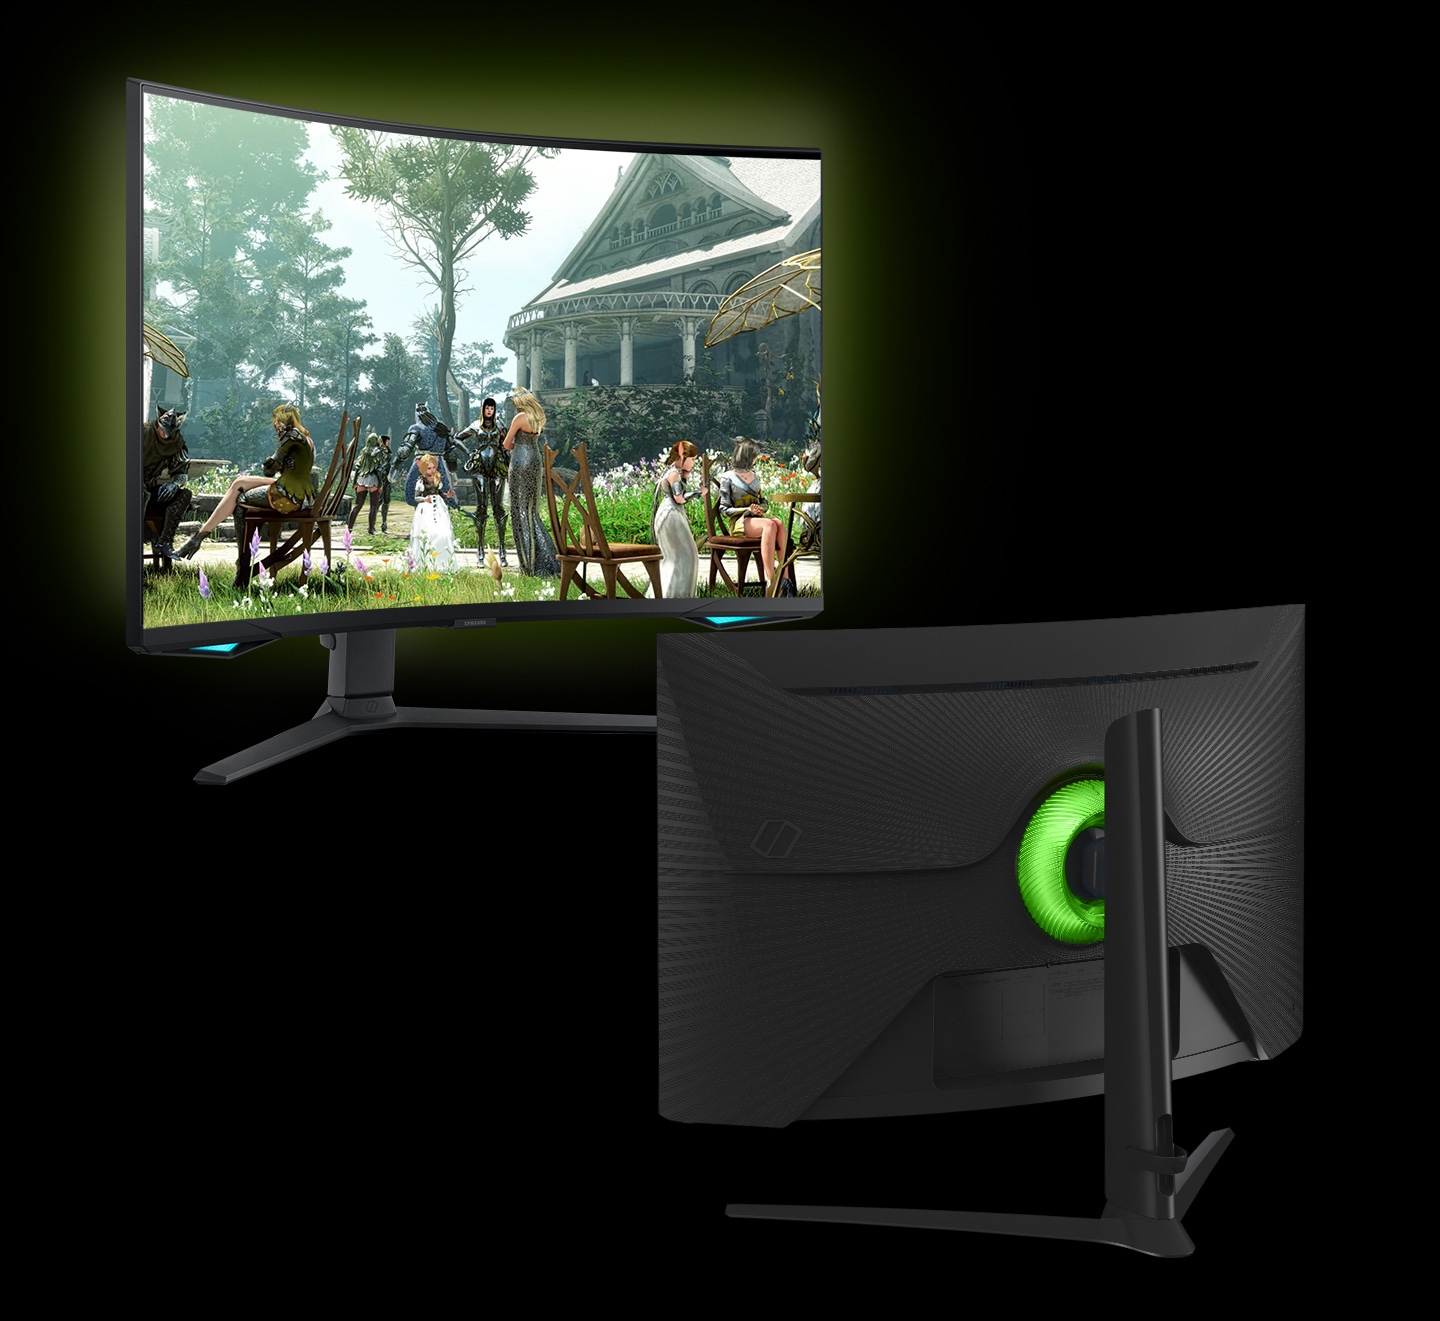 Po bližnjem posnetku osvetlitve monitorja sta prikazana 2 monitorja, pri čemer vsak prikazuje sprednjo in zadnjo stran zaslona. Levi monitor z zaslonom, ki prikazuje 3 različne prizore igre v vsaki barvi - modro, rdečo in zeleno. Osvetlitev desnega monitorja spreminja svojo barvo glede na barve prizorov igre.